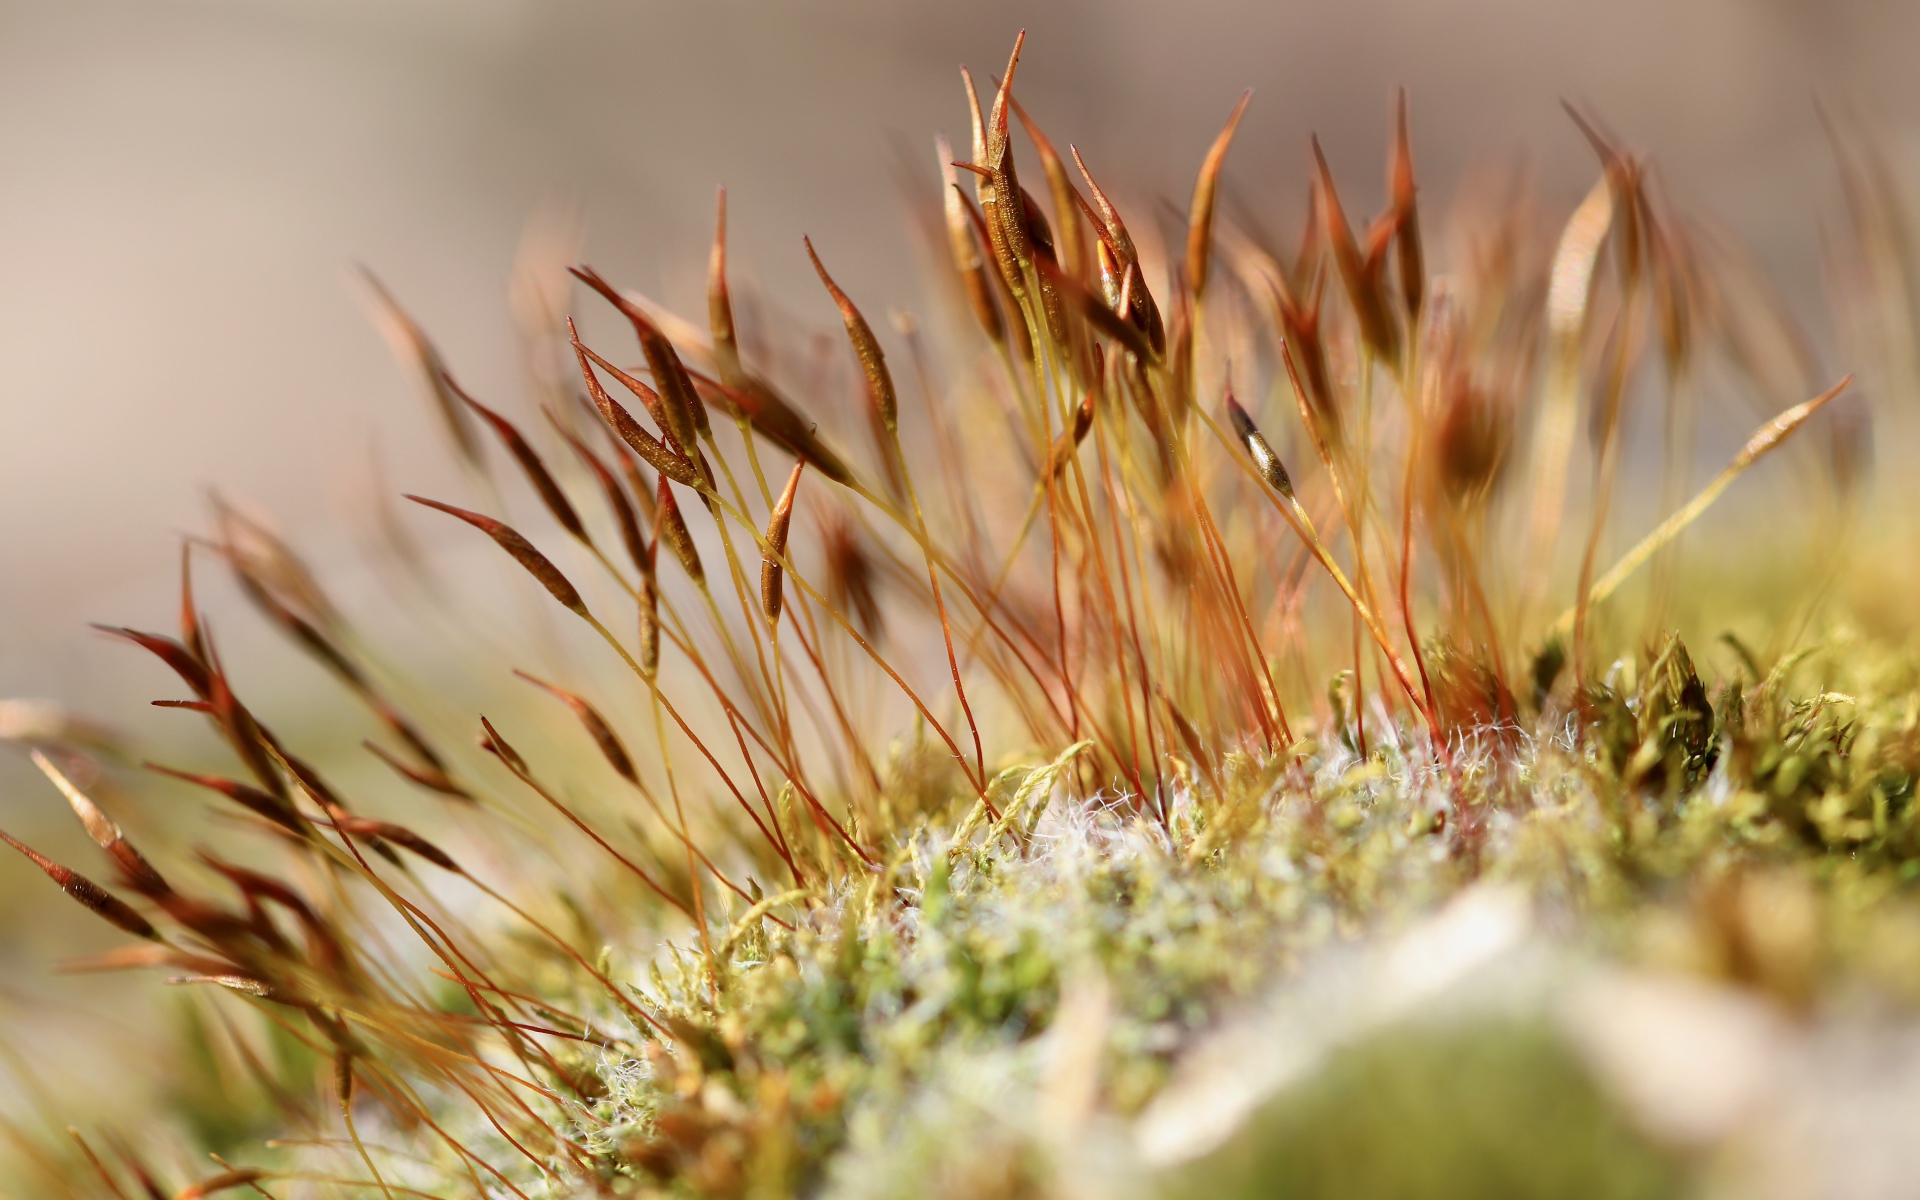 Green moss close up